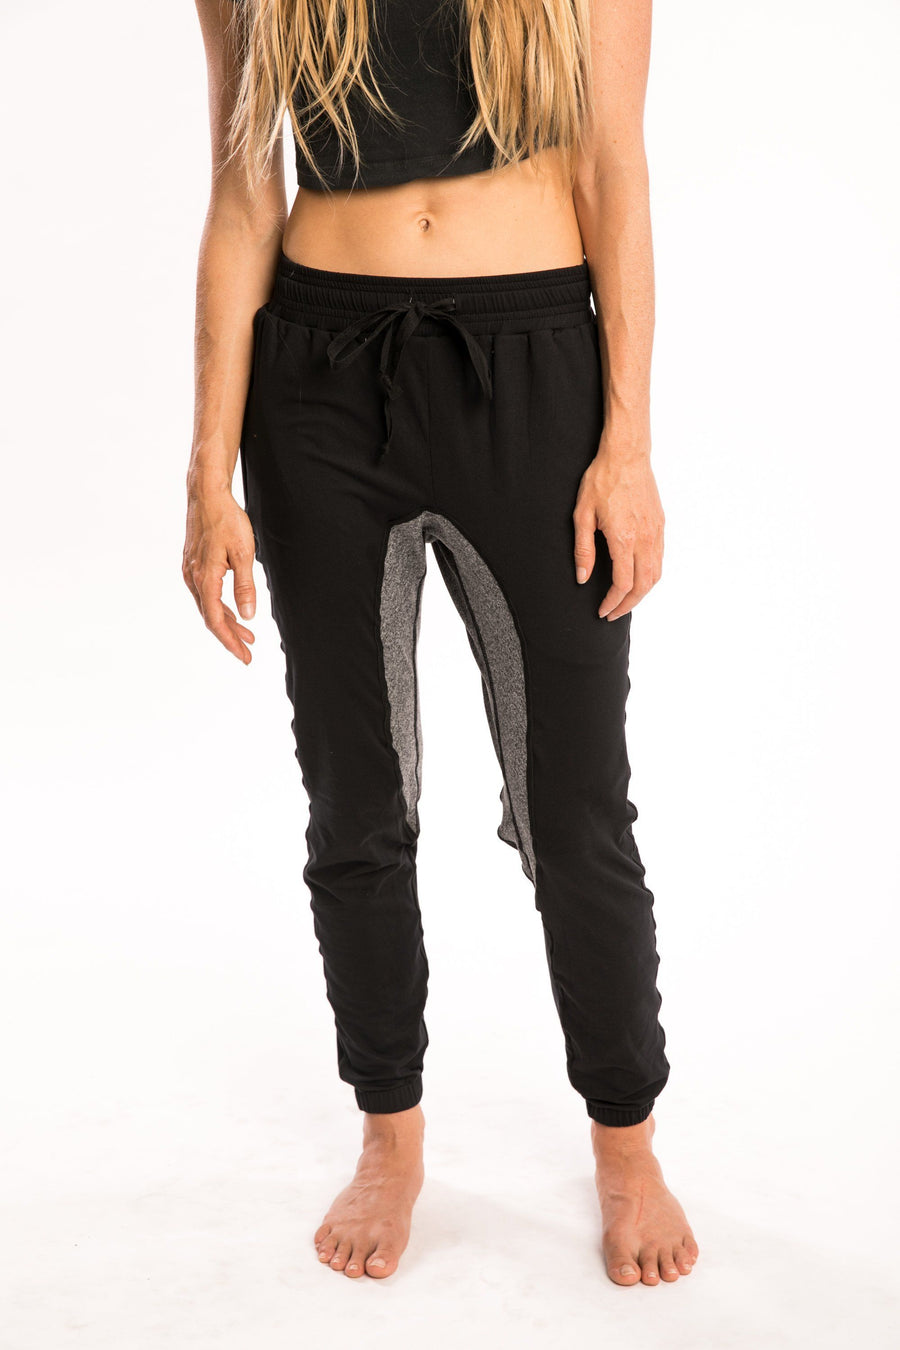 BLACK/GRAY Ninja Pant-PANTS-Pi Movement-Pi Movement